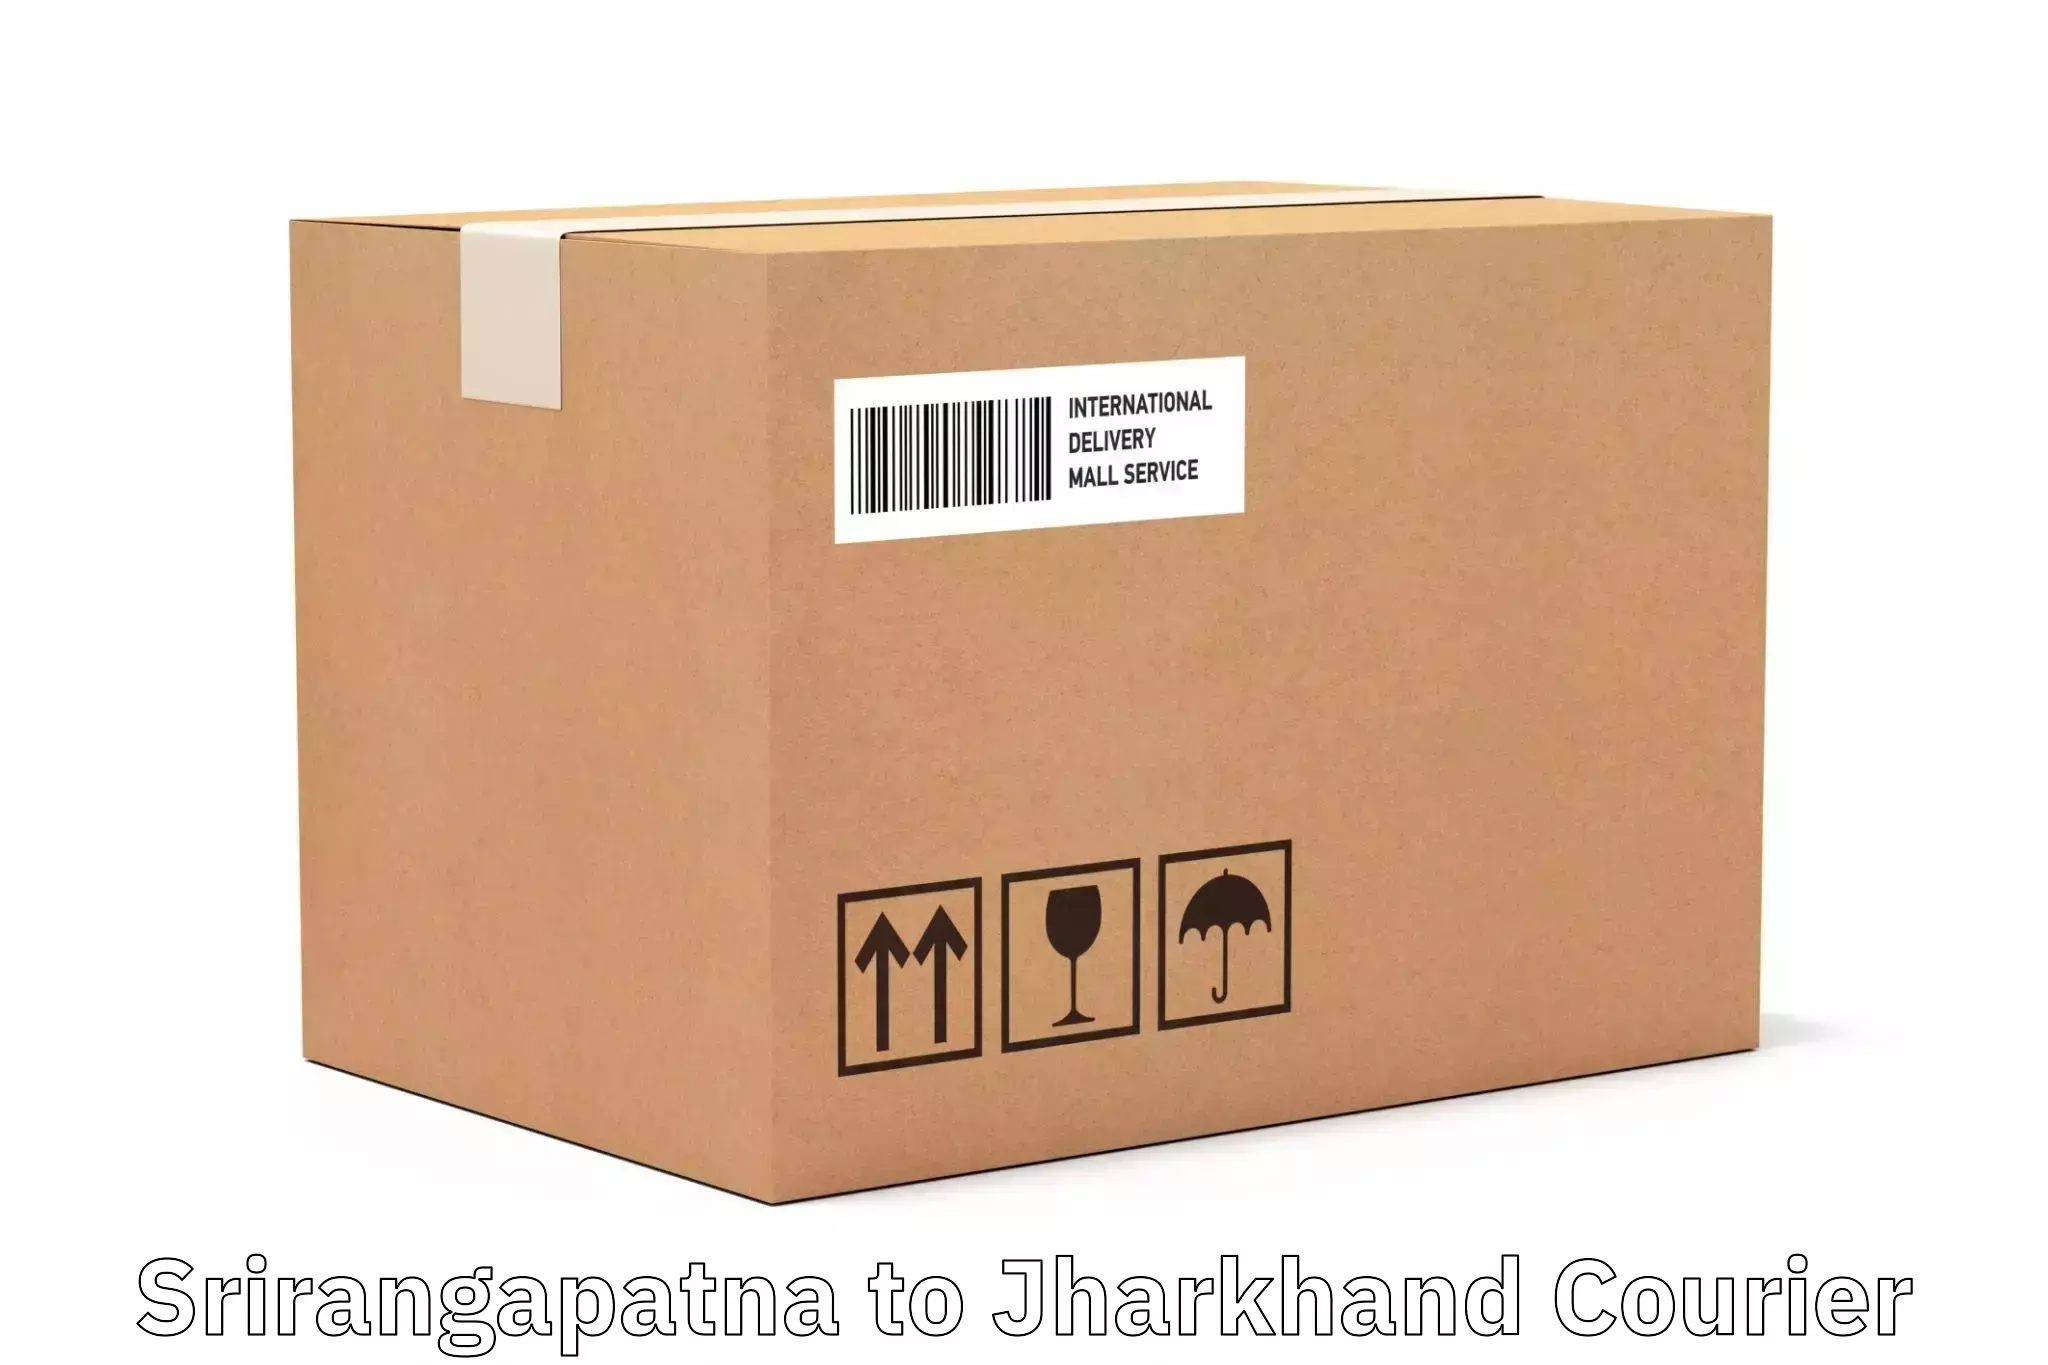 Smart shipping technology Srirangapatna to Bara Boarijor